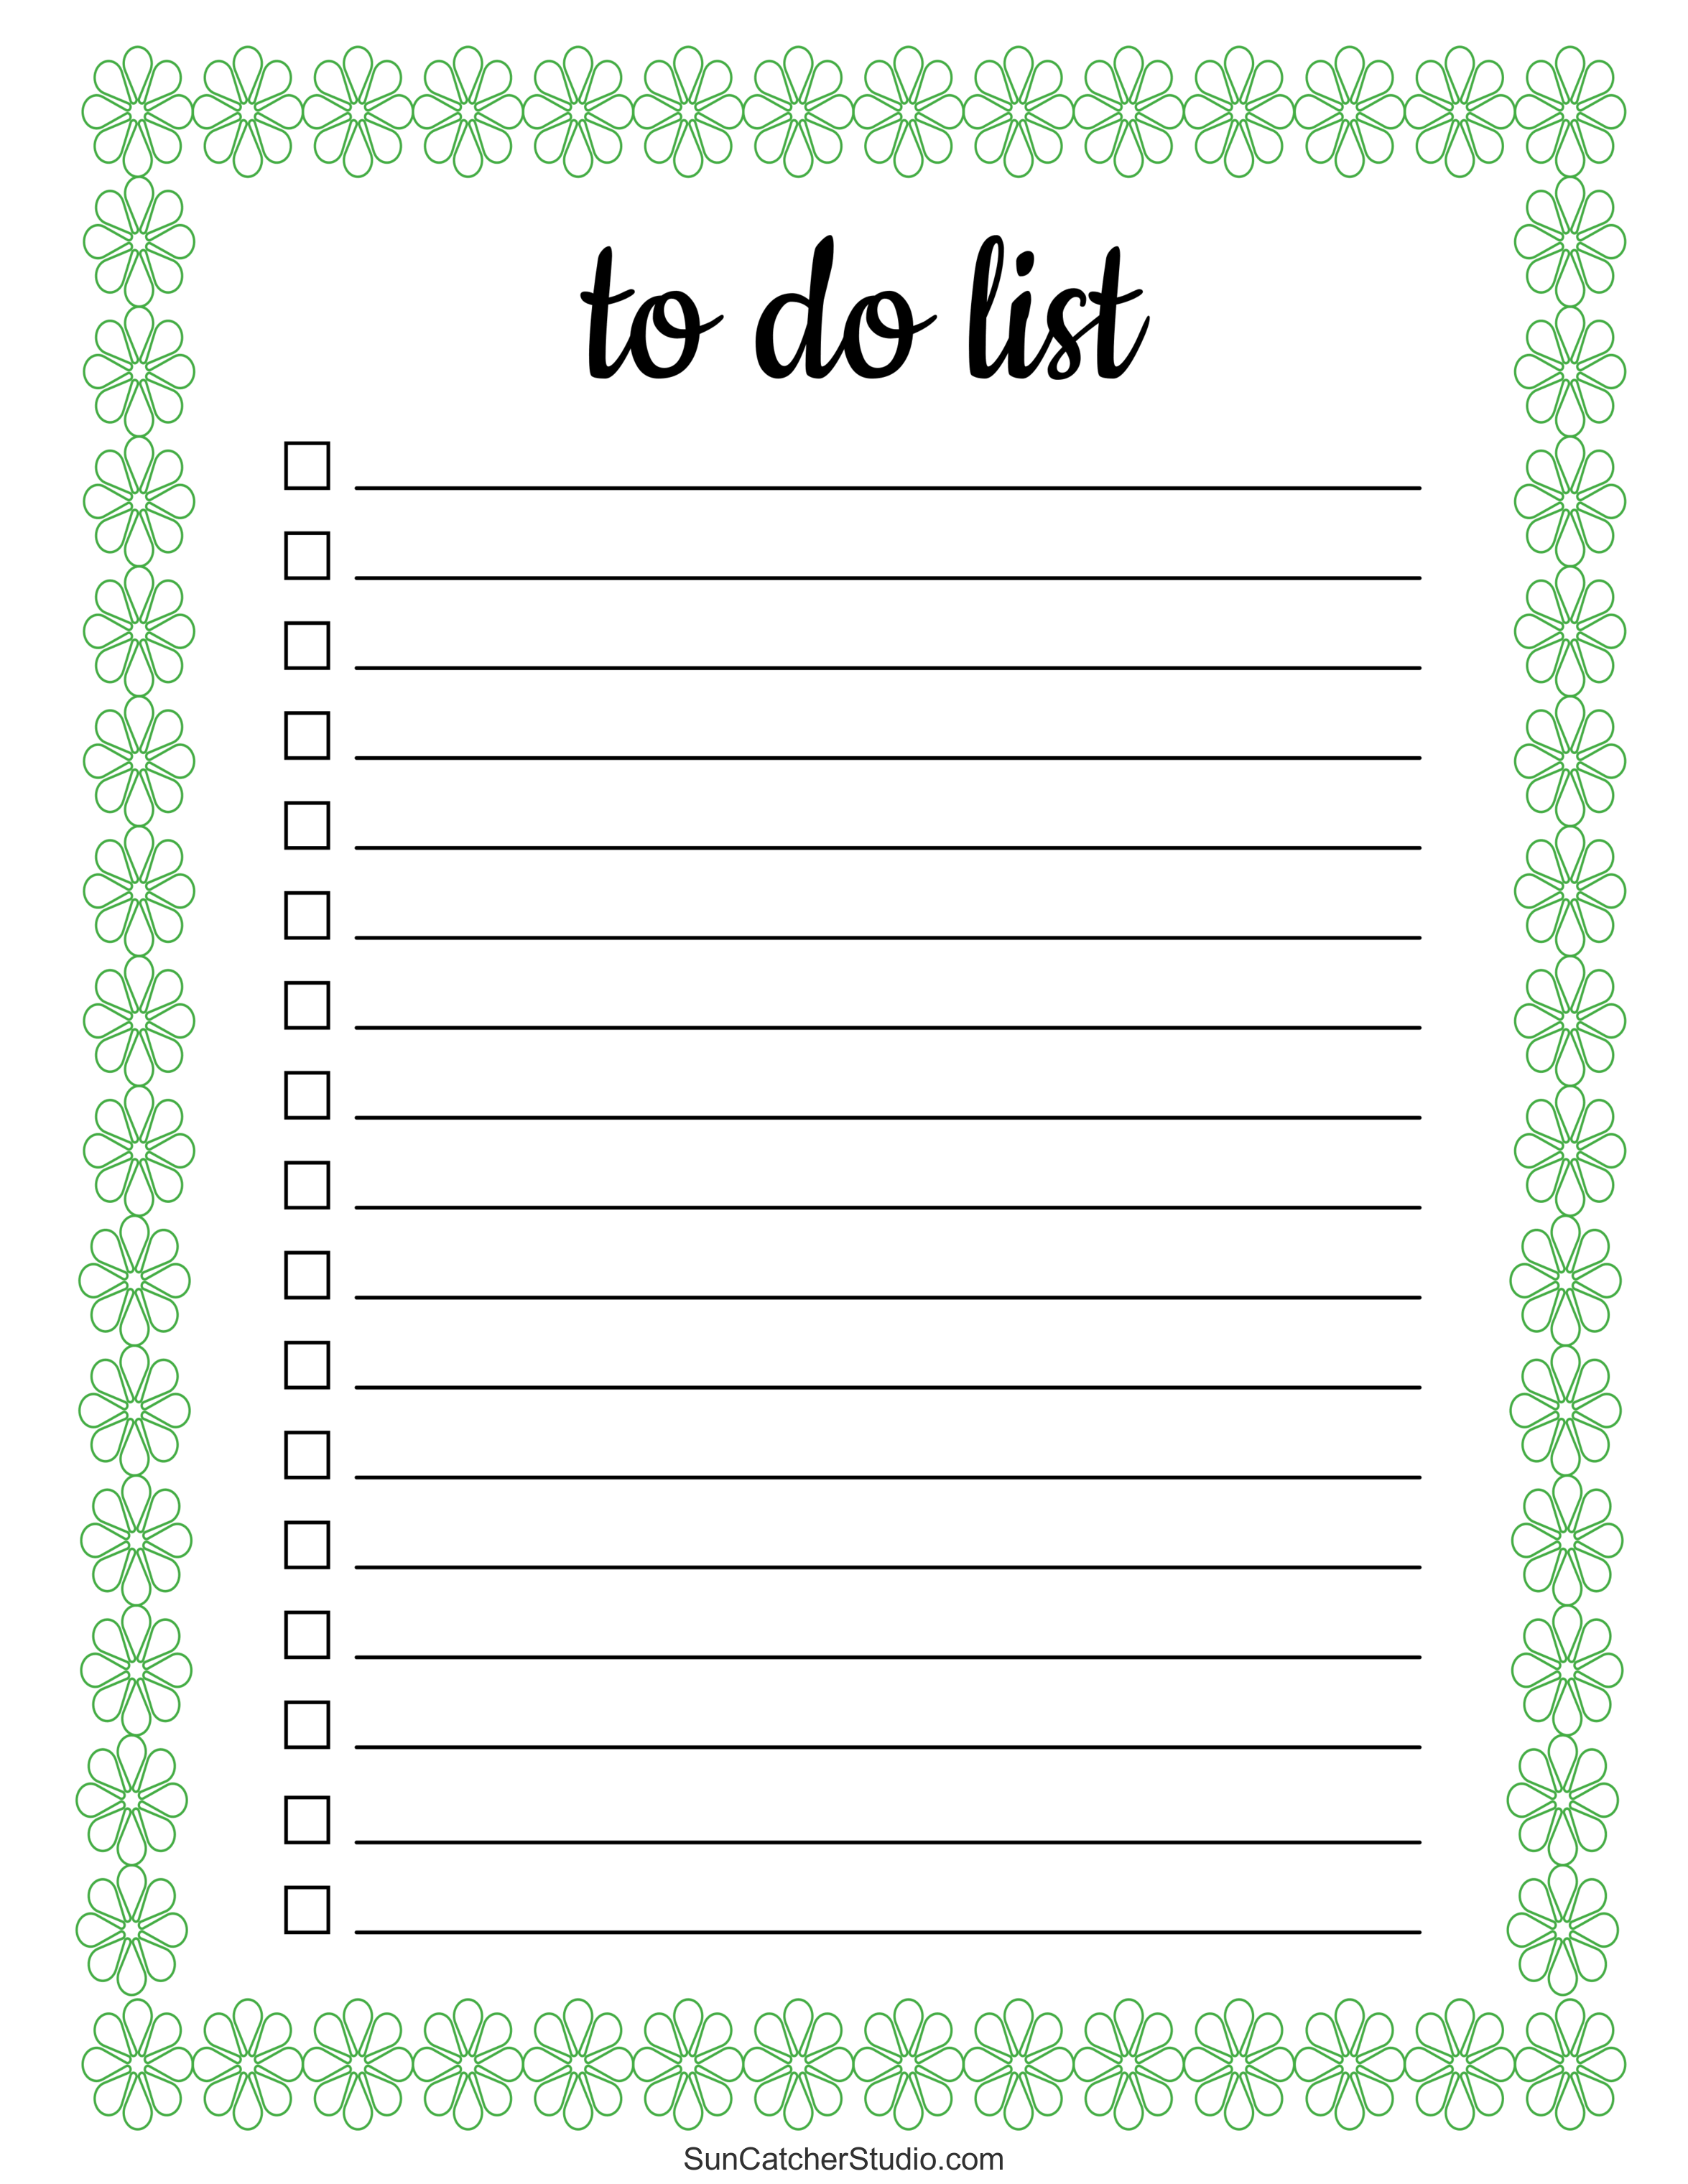 Printable To Do List